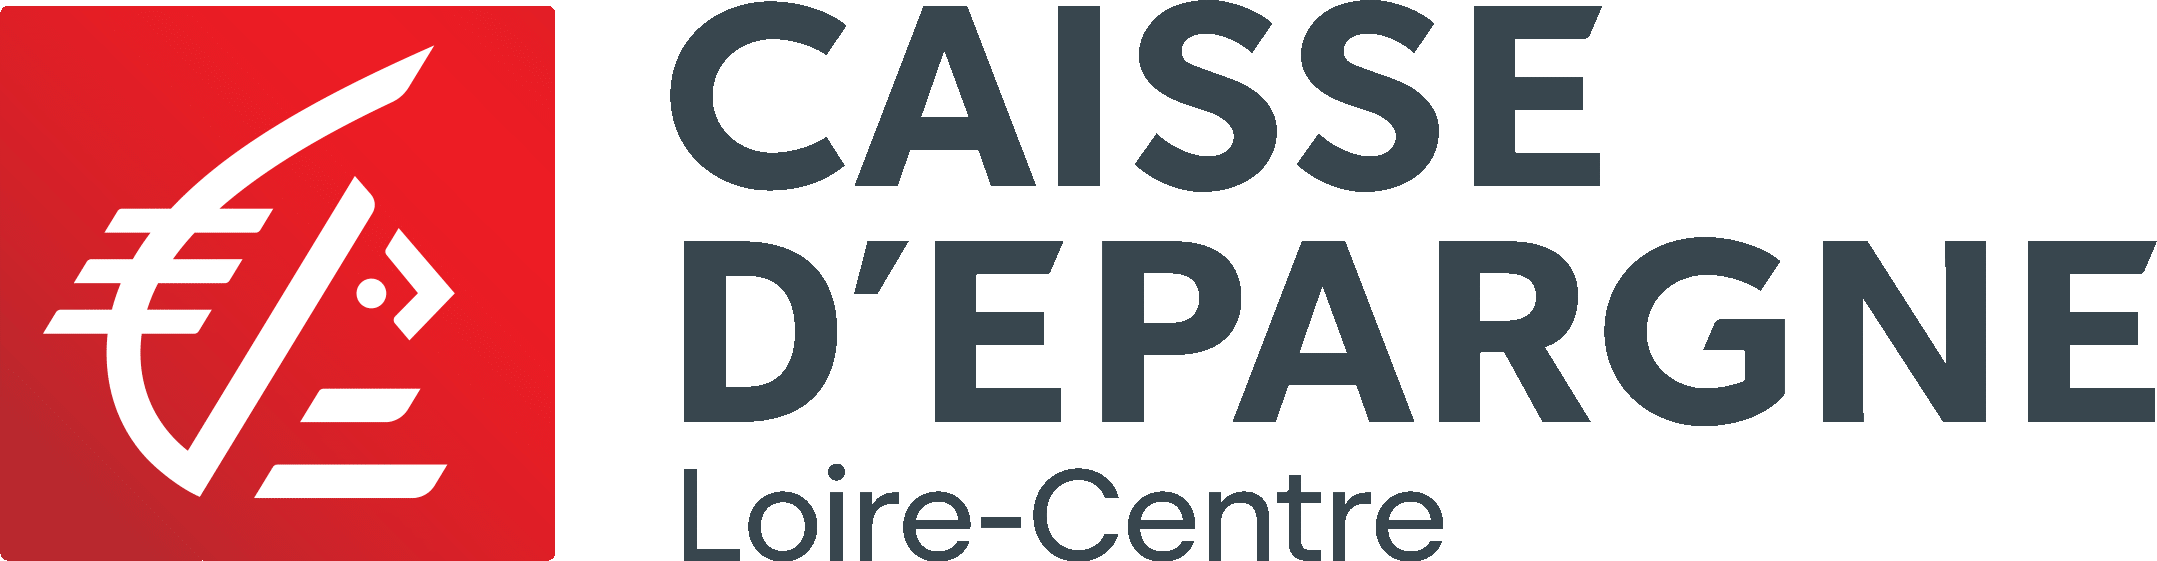 https://www.caisse-epargne.fr/loire-centre/particuliers